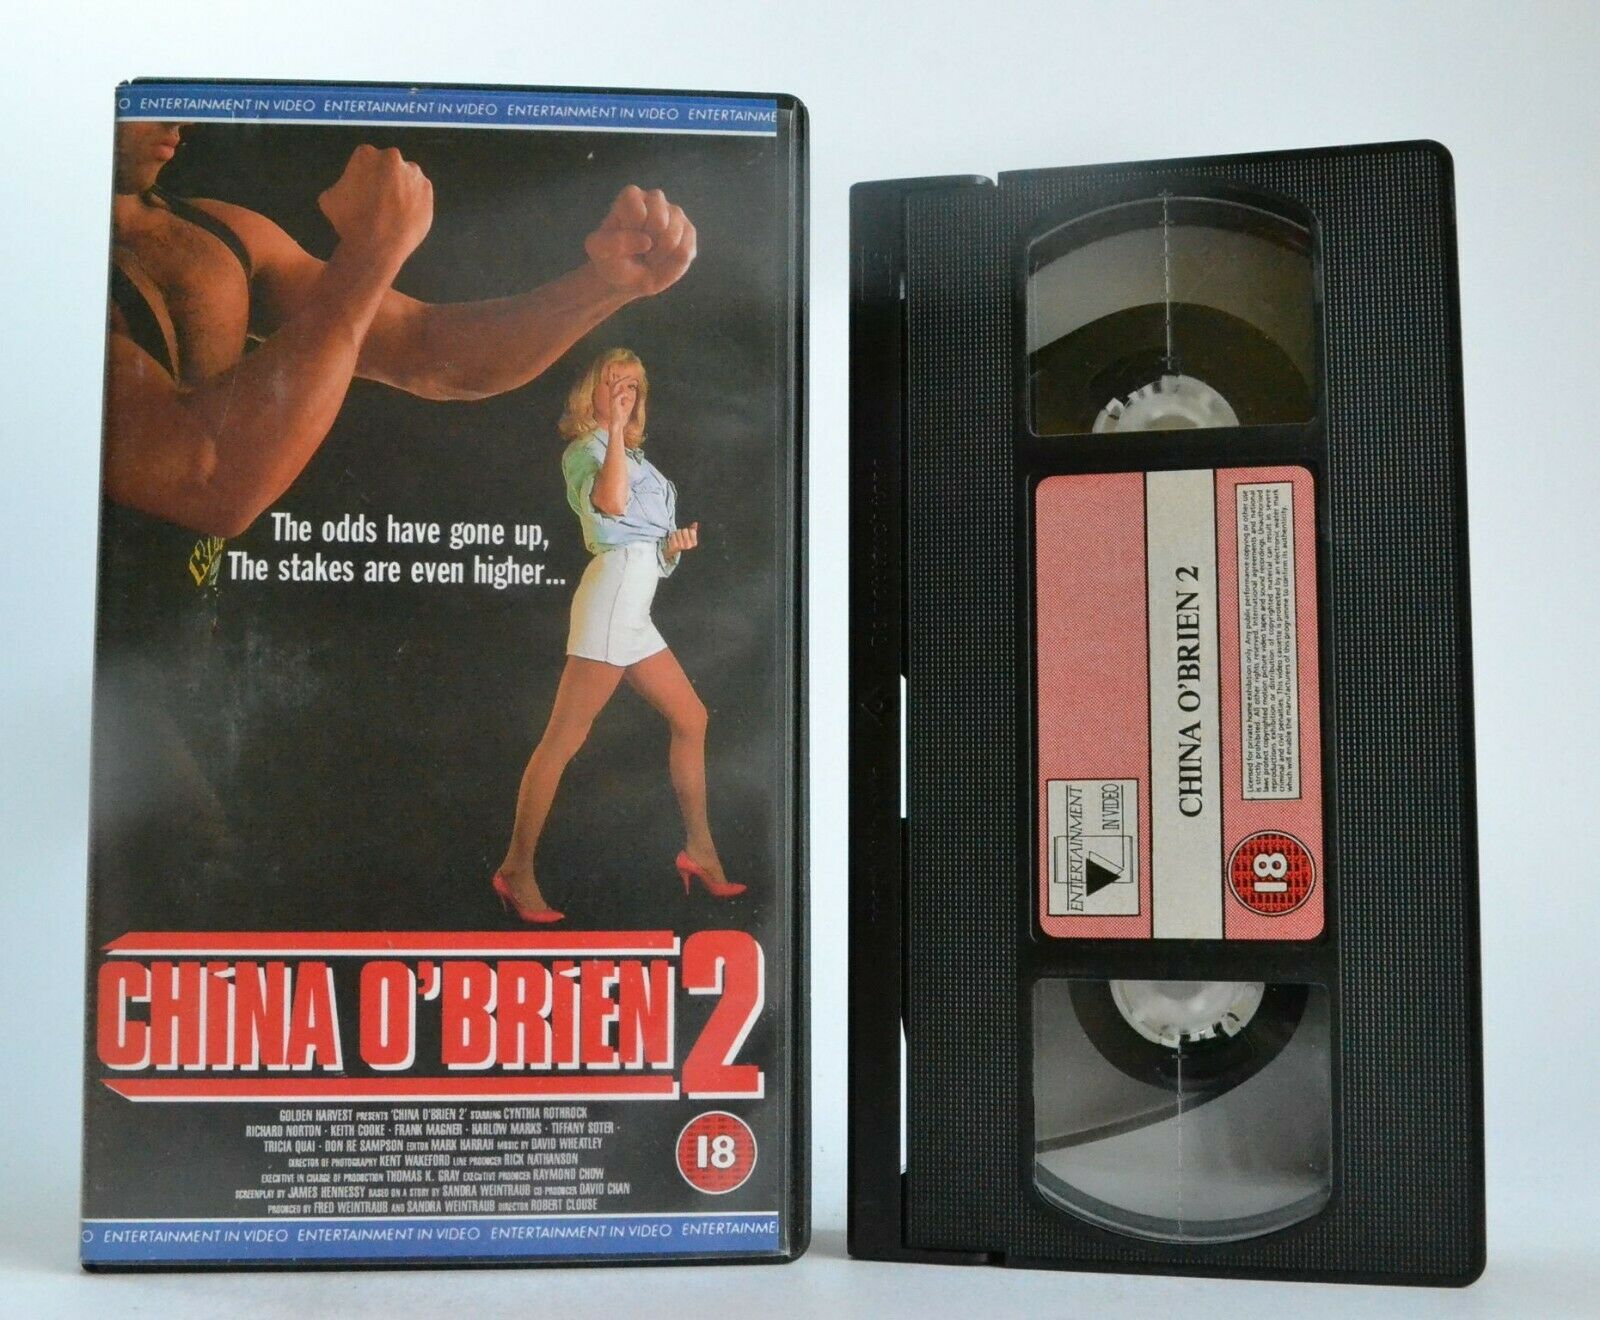 China O'Brien 2: Justice-Vengeance,Martial Arts Skills - Cynthia Rothrock - VHS-